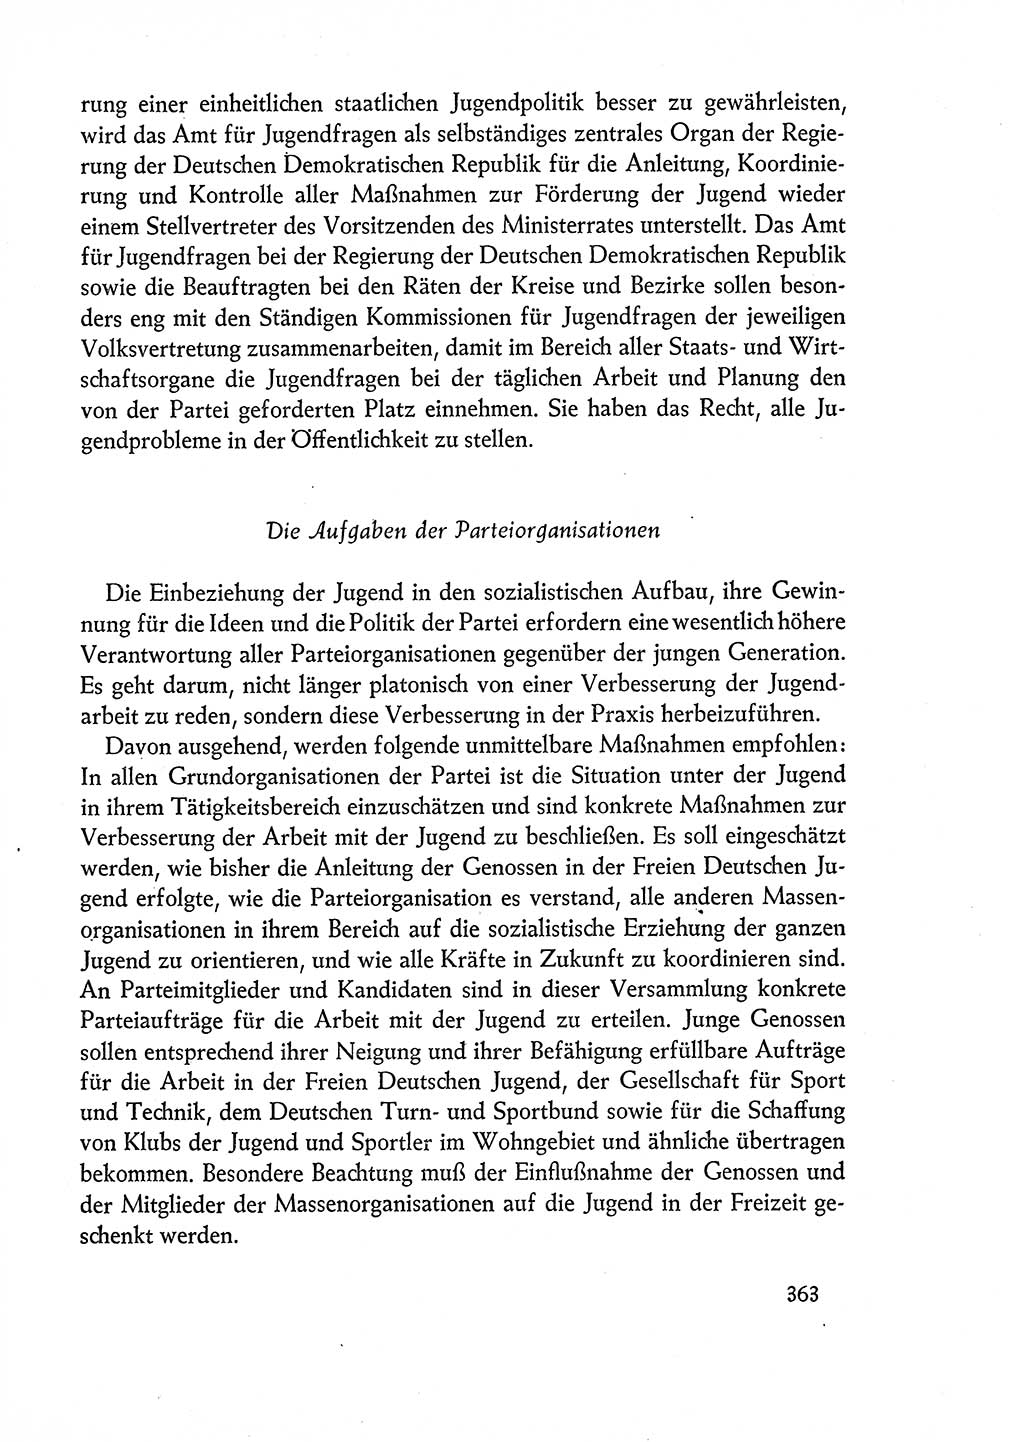 Dokumente der Sozialistischen Einheitspartei Deutschlands (SED) [Deutsche Demokratische Republik (DDR)] 1960-1961, Seite 363 (Dok. SED DDR 1960-1961, S. 363)